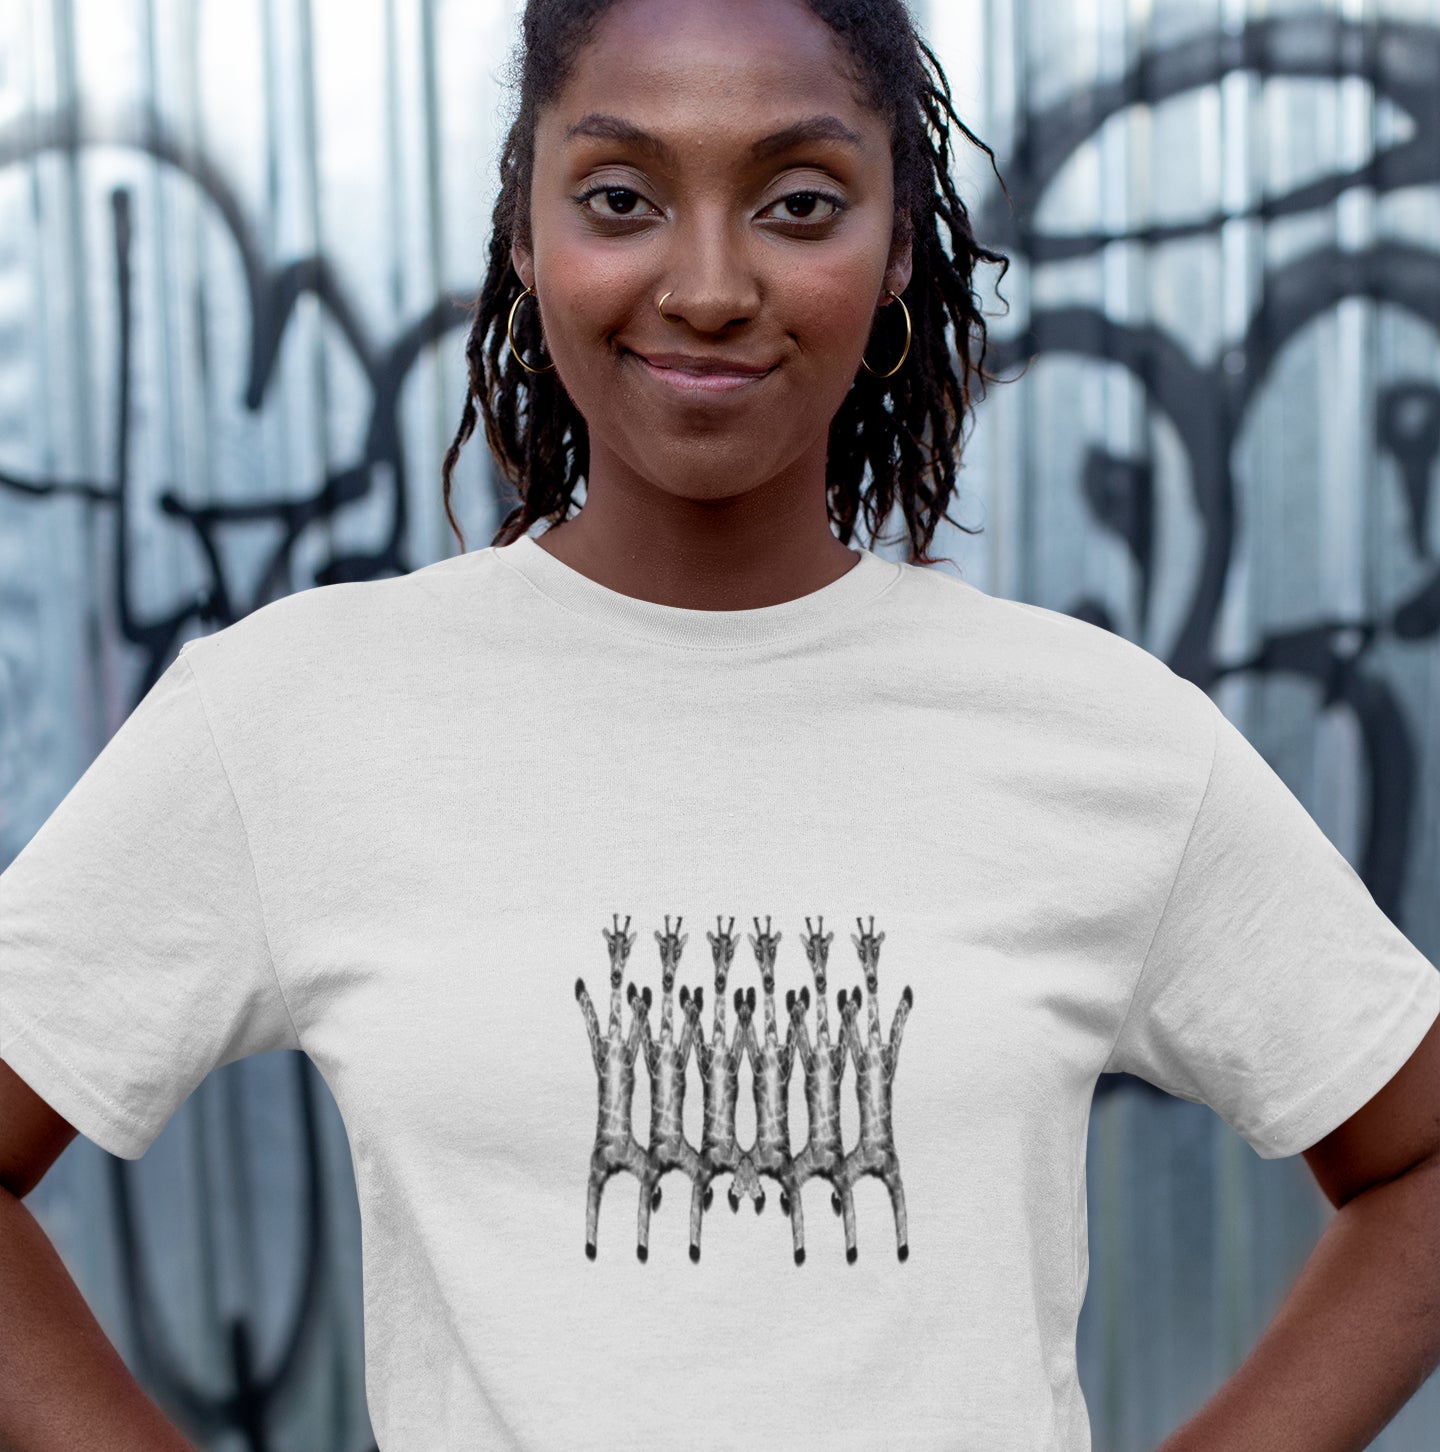 Dancing Giraffes | Women's 100% Organic Cotton T Shirt in white worn by a woman